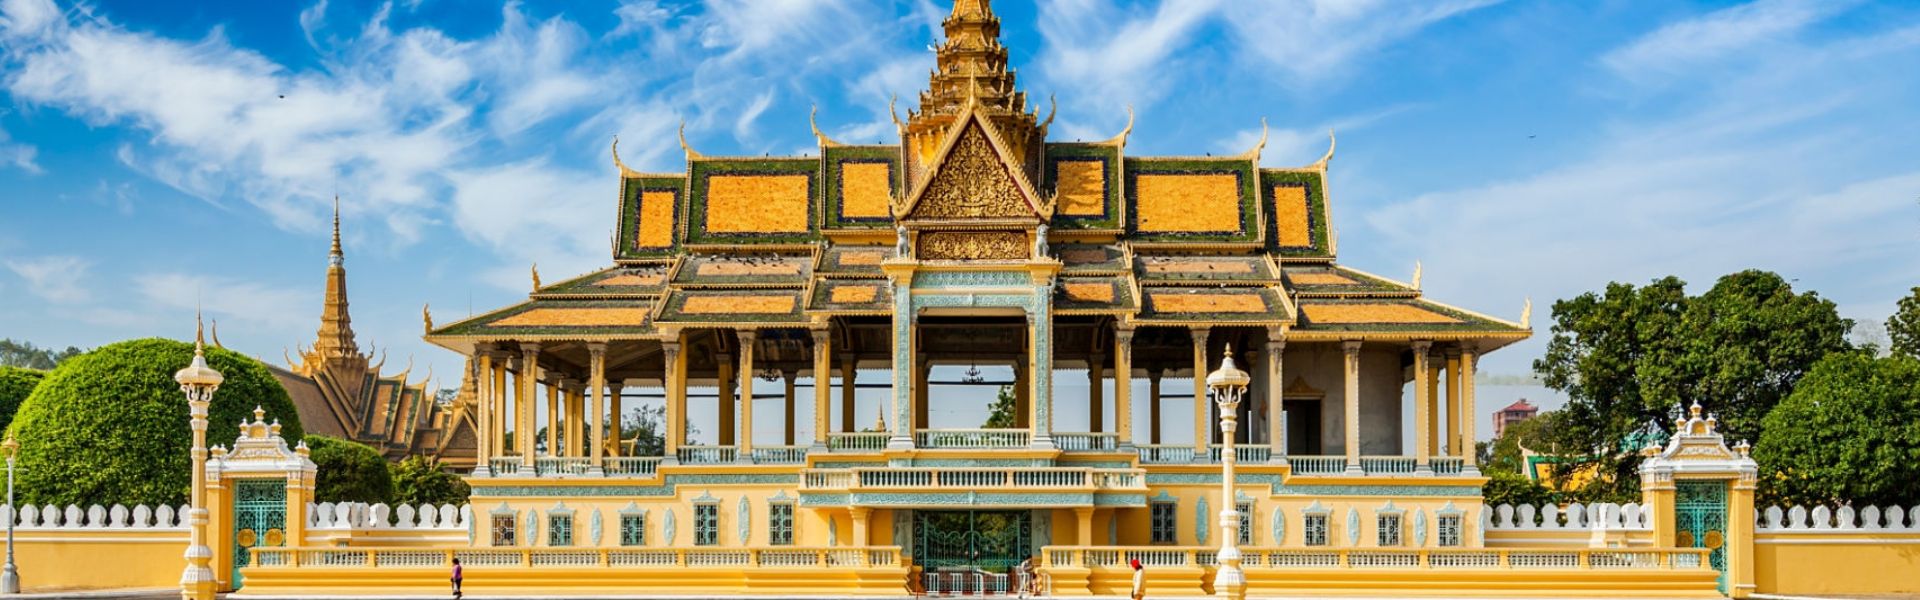 Phnom Penh - Consejos de viaje | Guía de viajes a Camboya